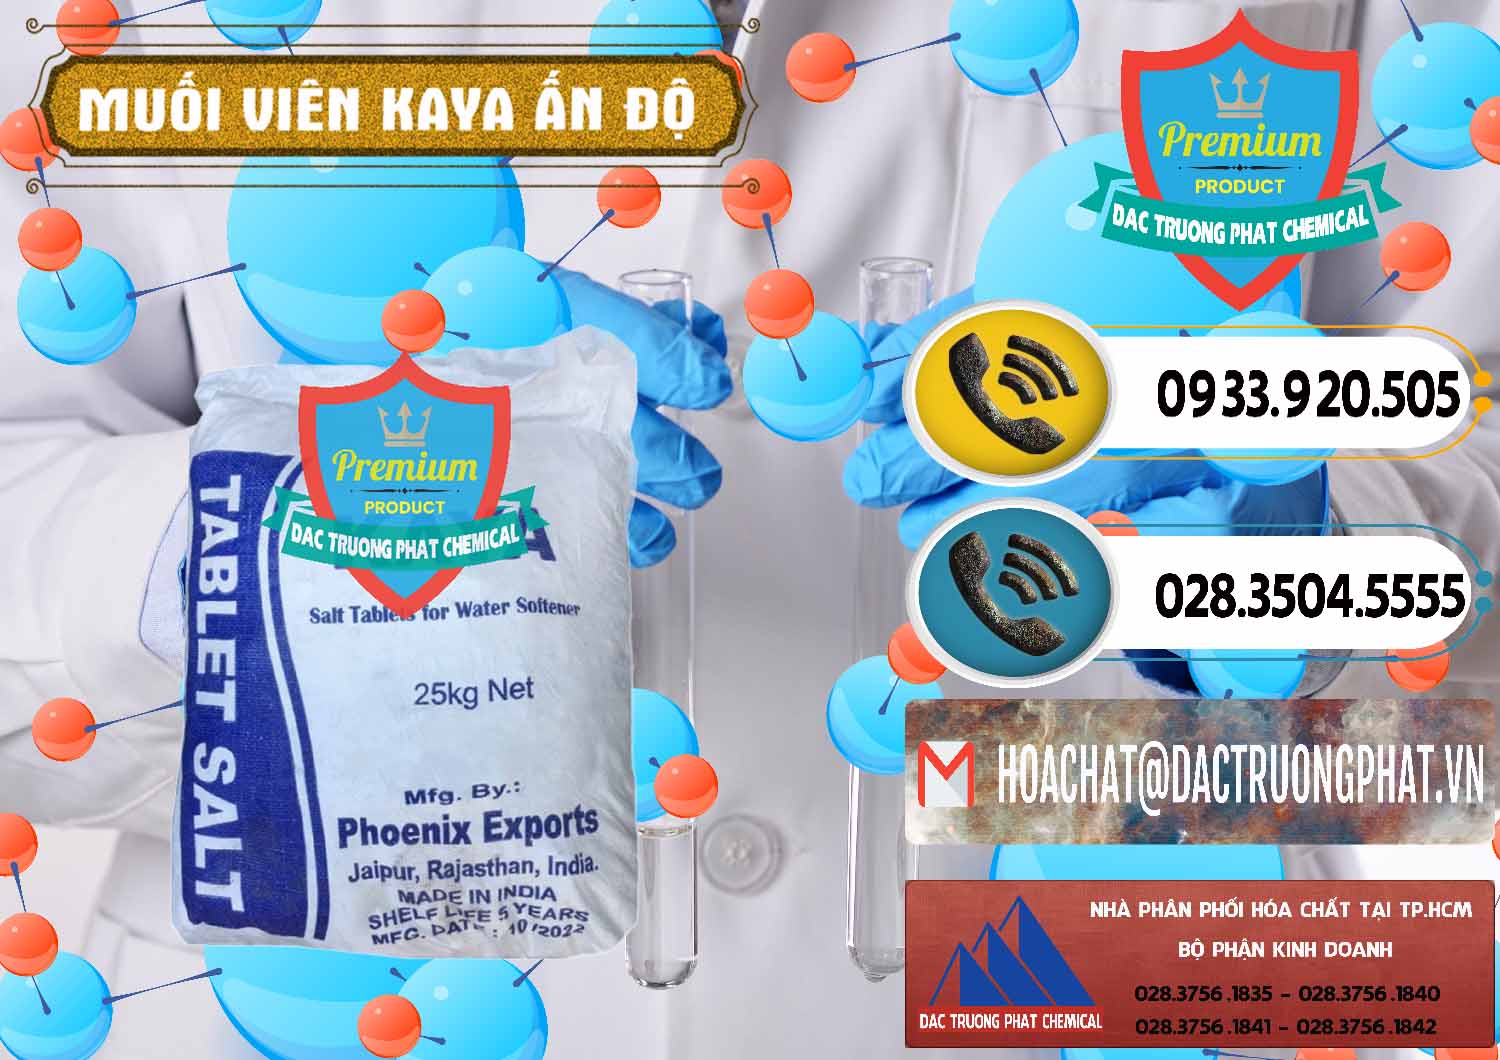 Đơn vị cung cấp ( bán ) Muối NaCL – Sodium Chloride Dạng Viên Tablets Kaya Ấn Độ India - 0368 - Cty chuyên cung cấp _ kinh doanh hóa chất tại TP.HCM - hoachatdetnhuom.vn